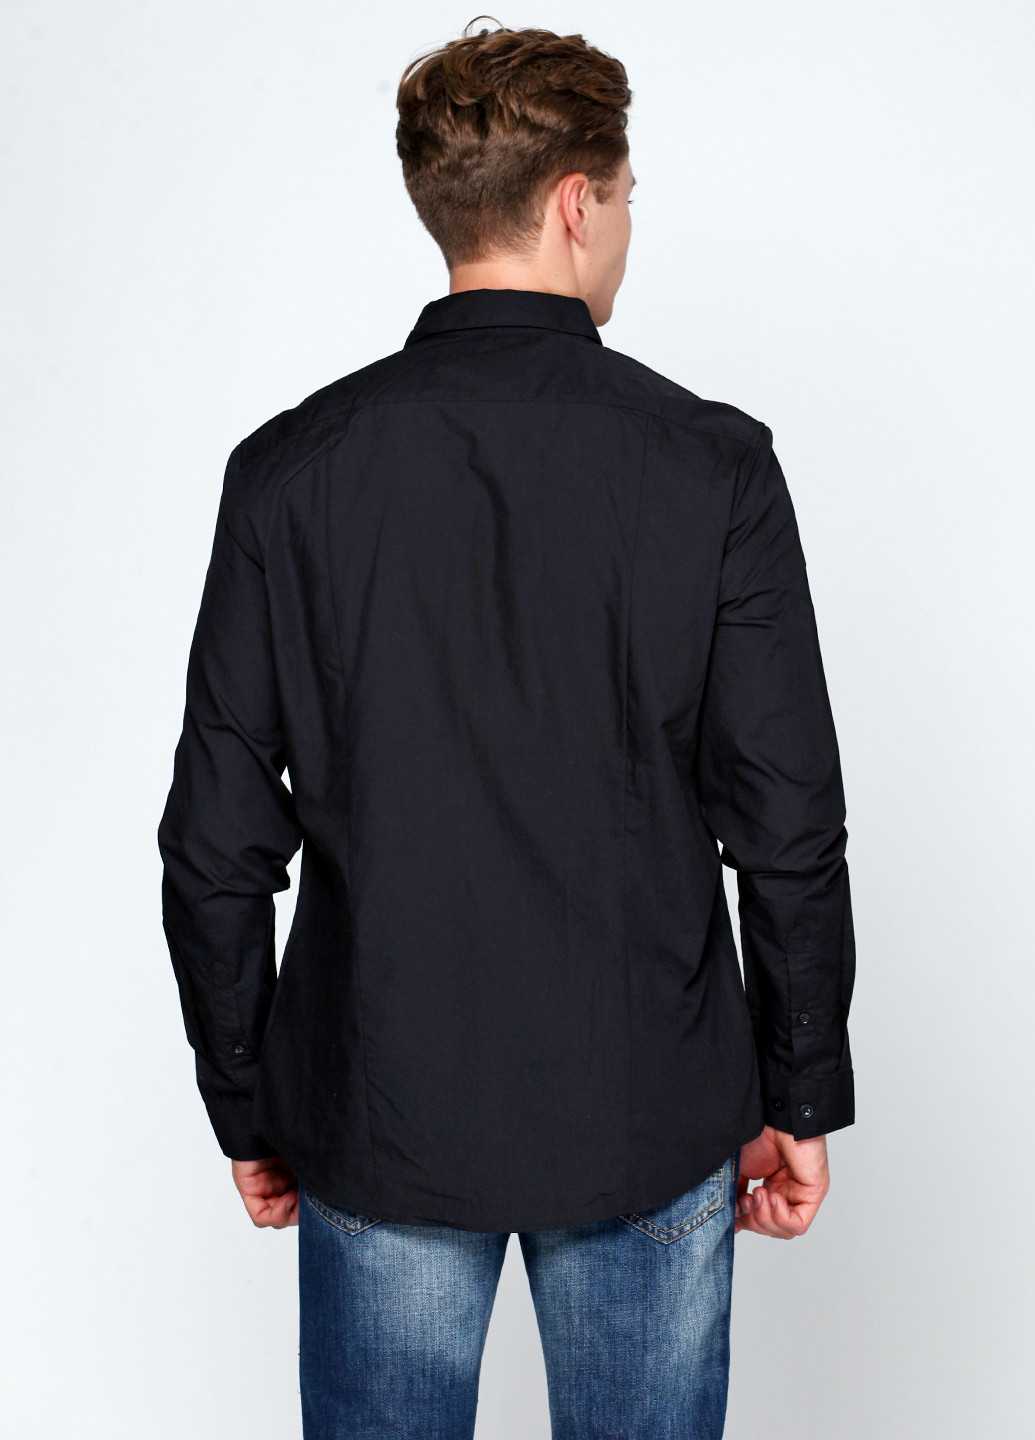 Черная классическая рубашка H&M с длинным рукавом